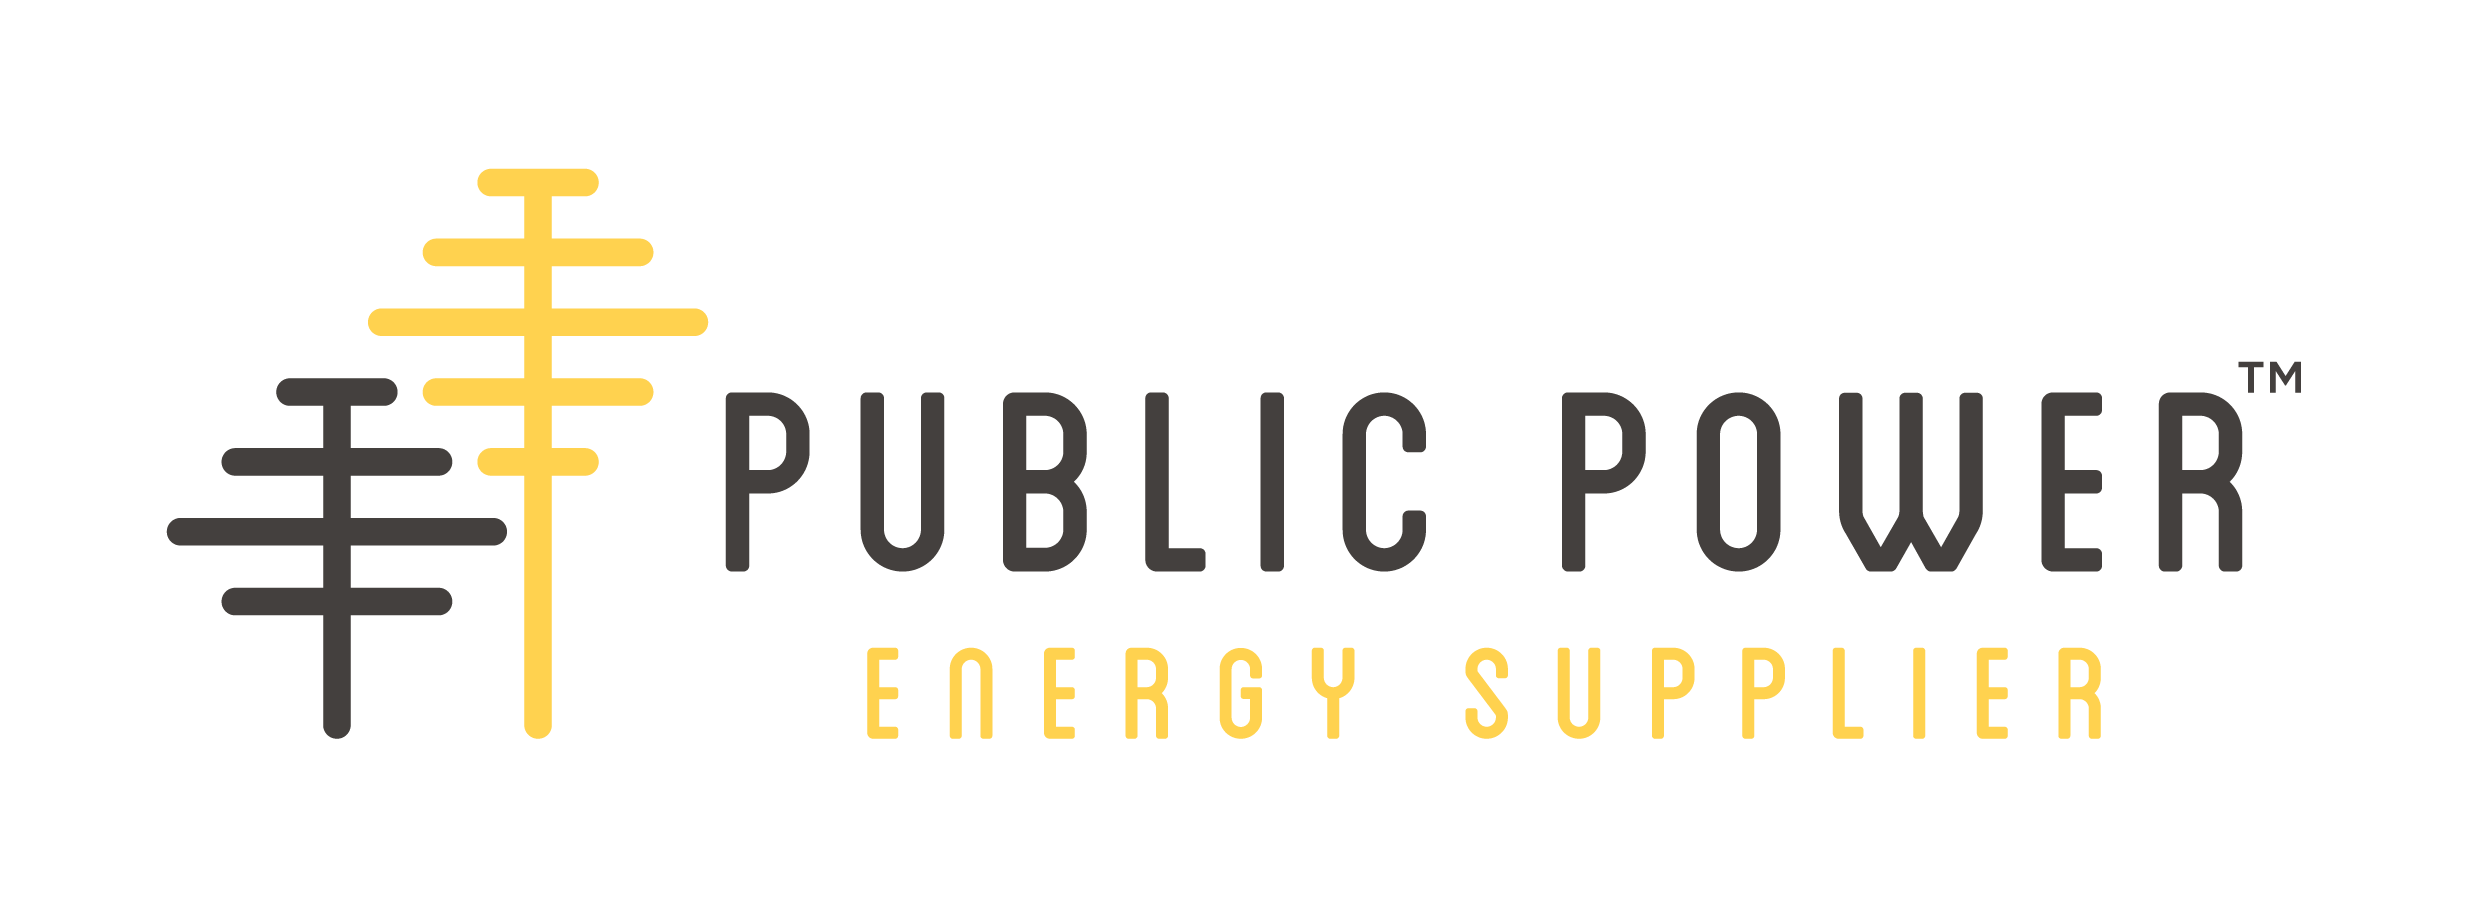 public-power.png